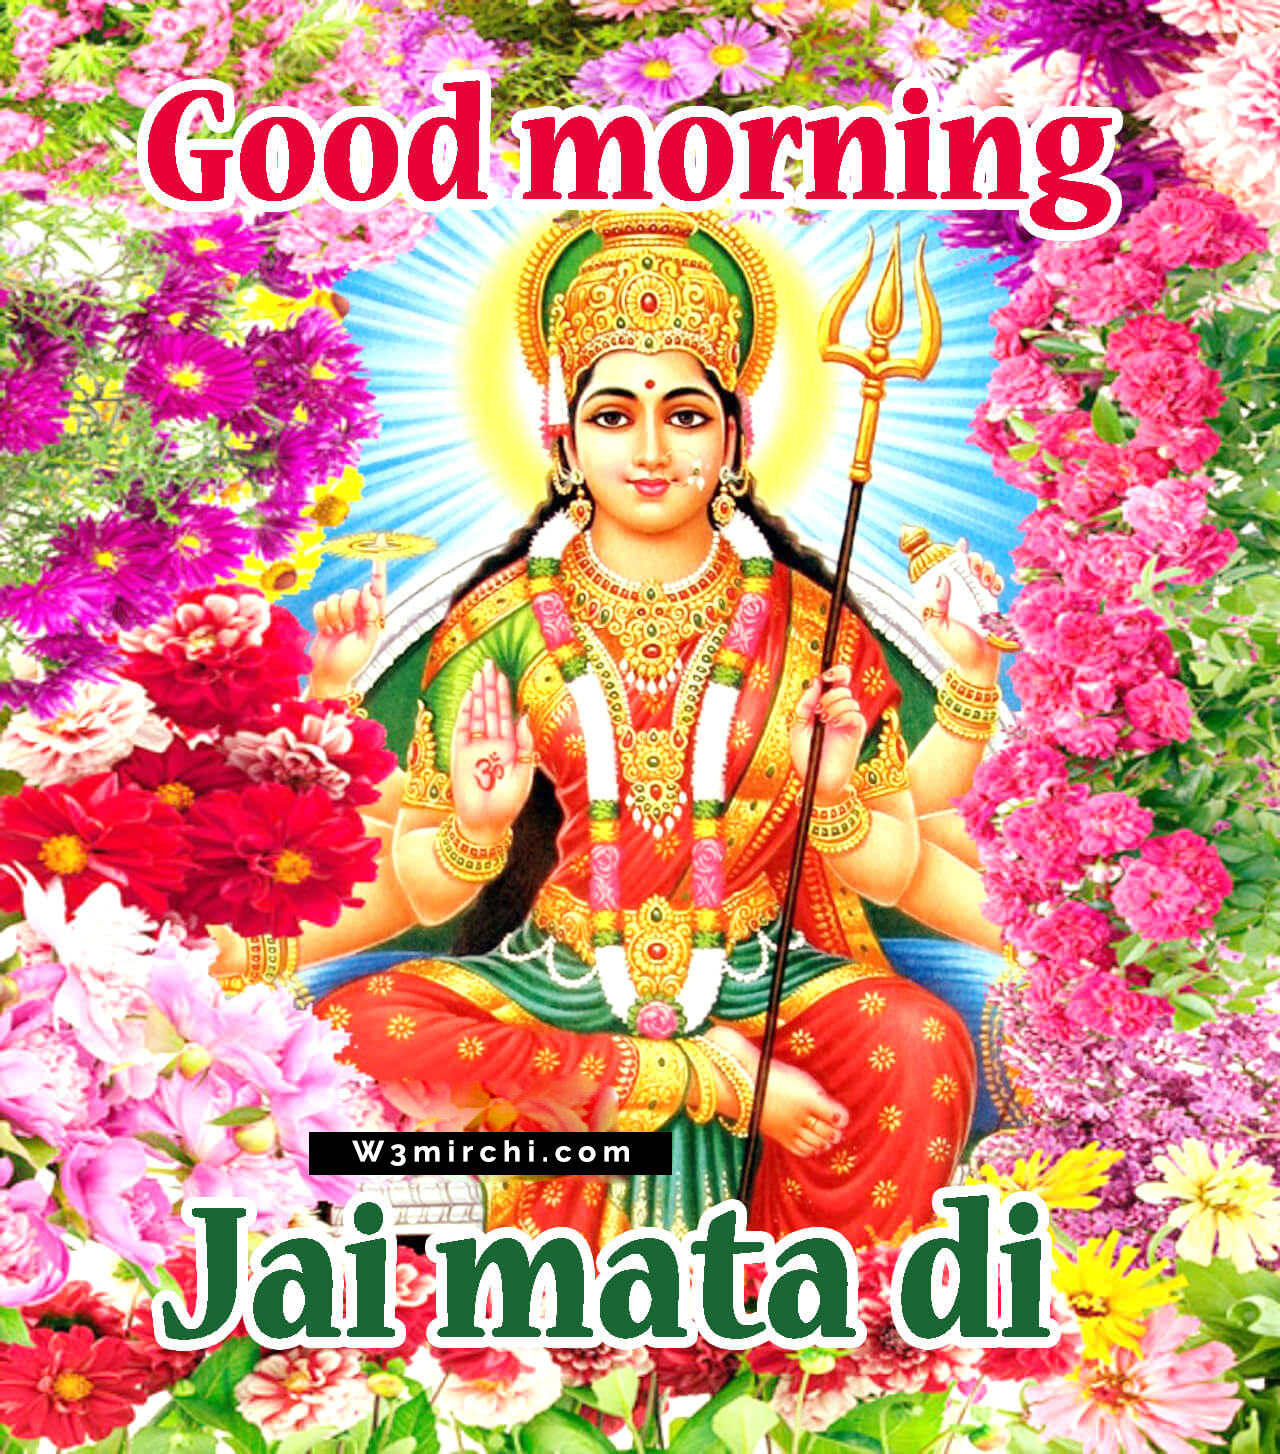 Good Morning Jai Mata Di - Mata Rani Good Morning Images